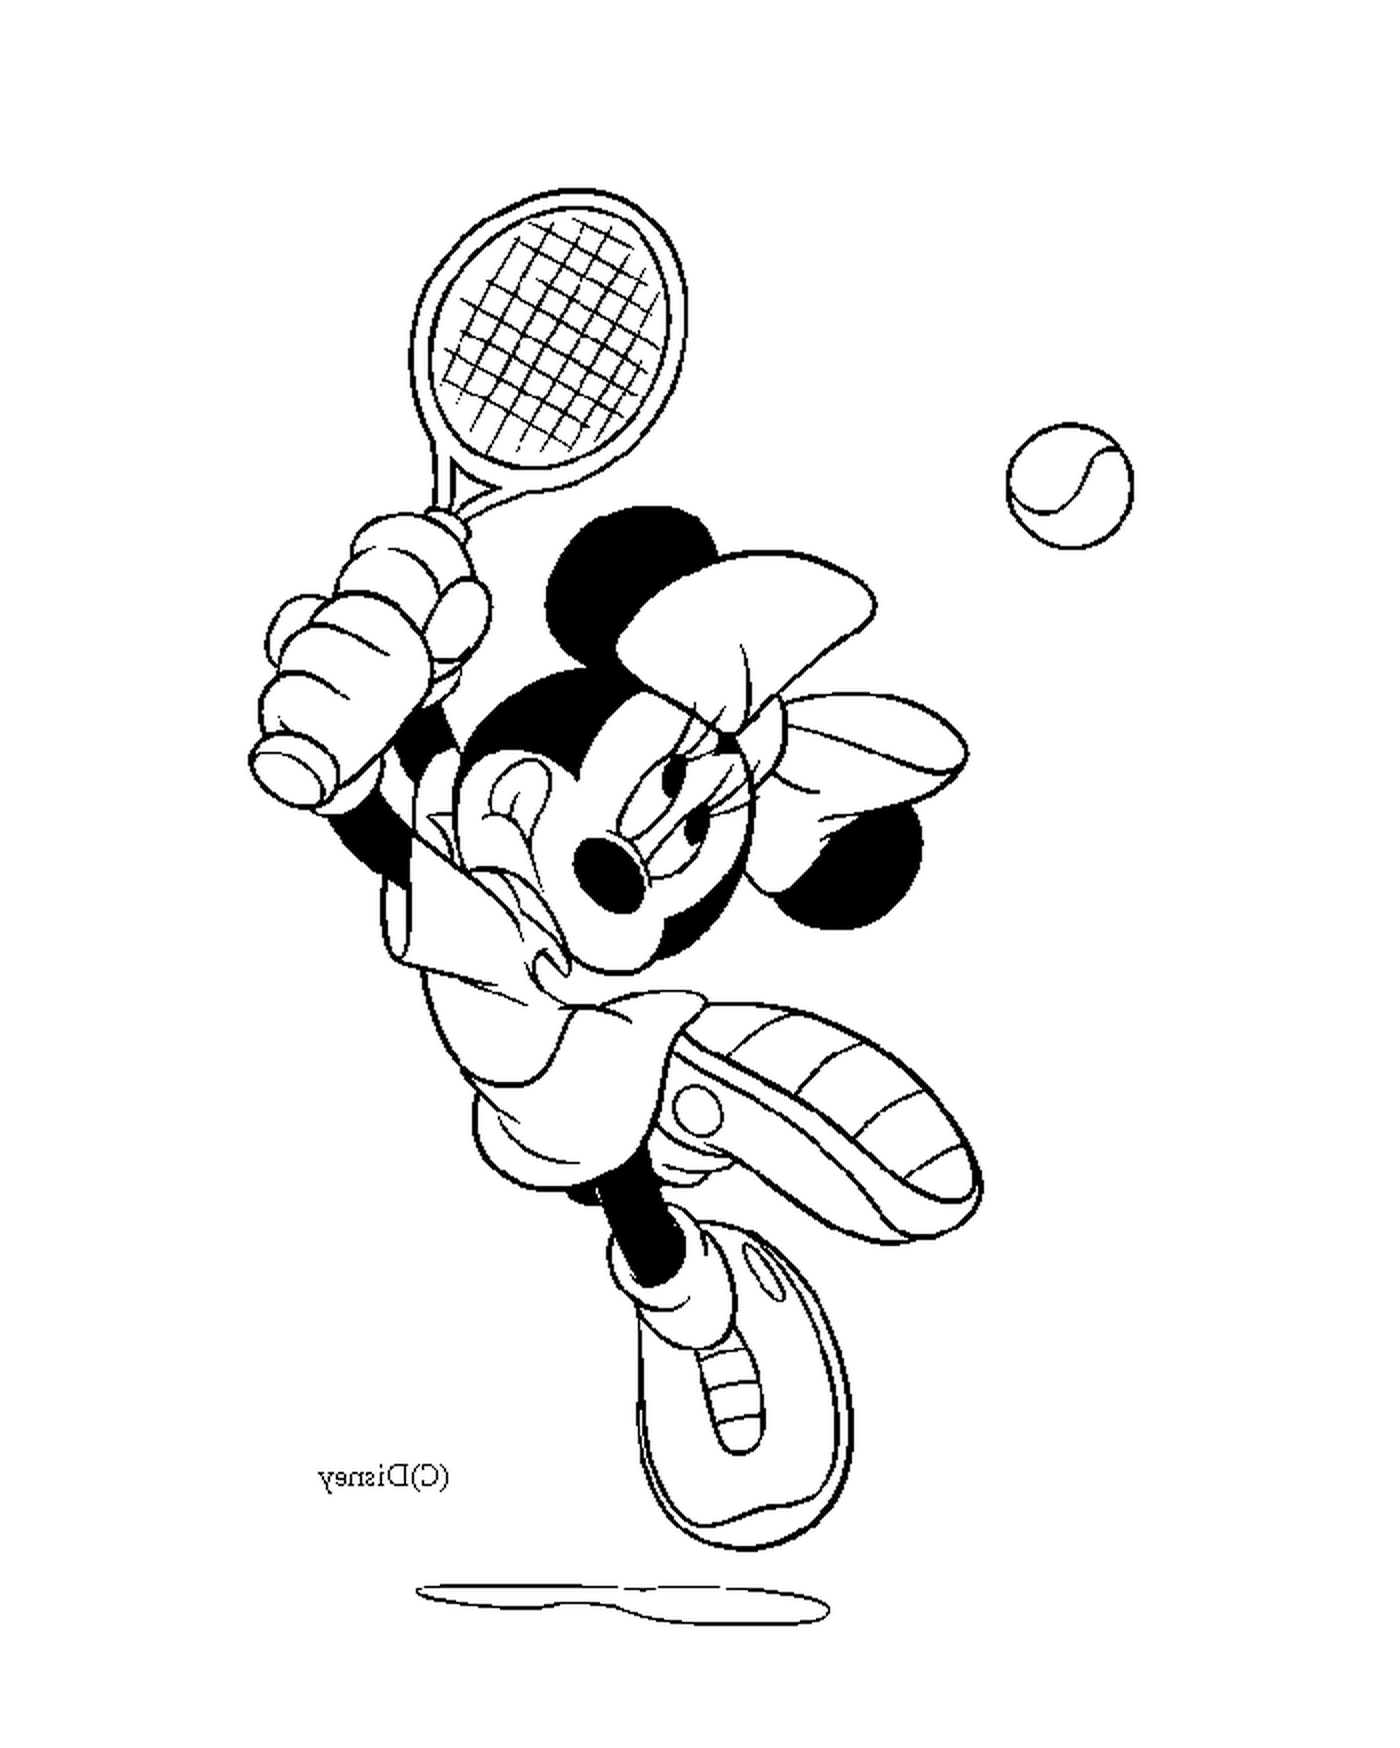  ميني يلعب التنس 